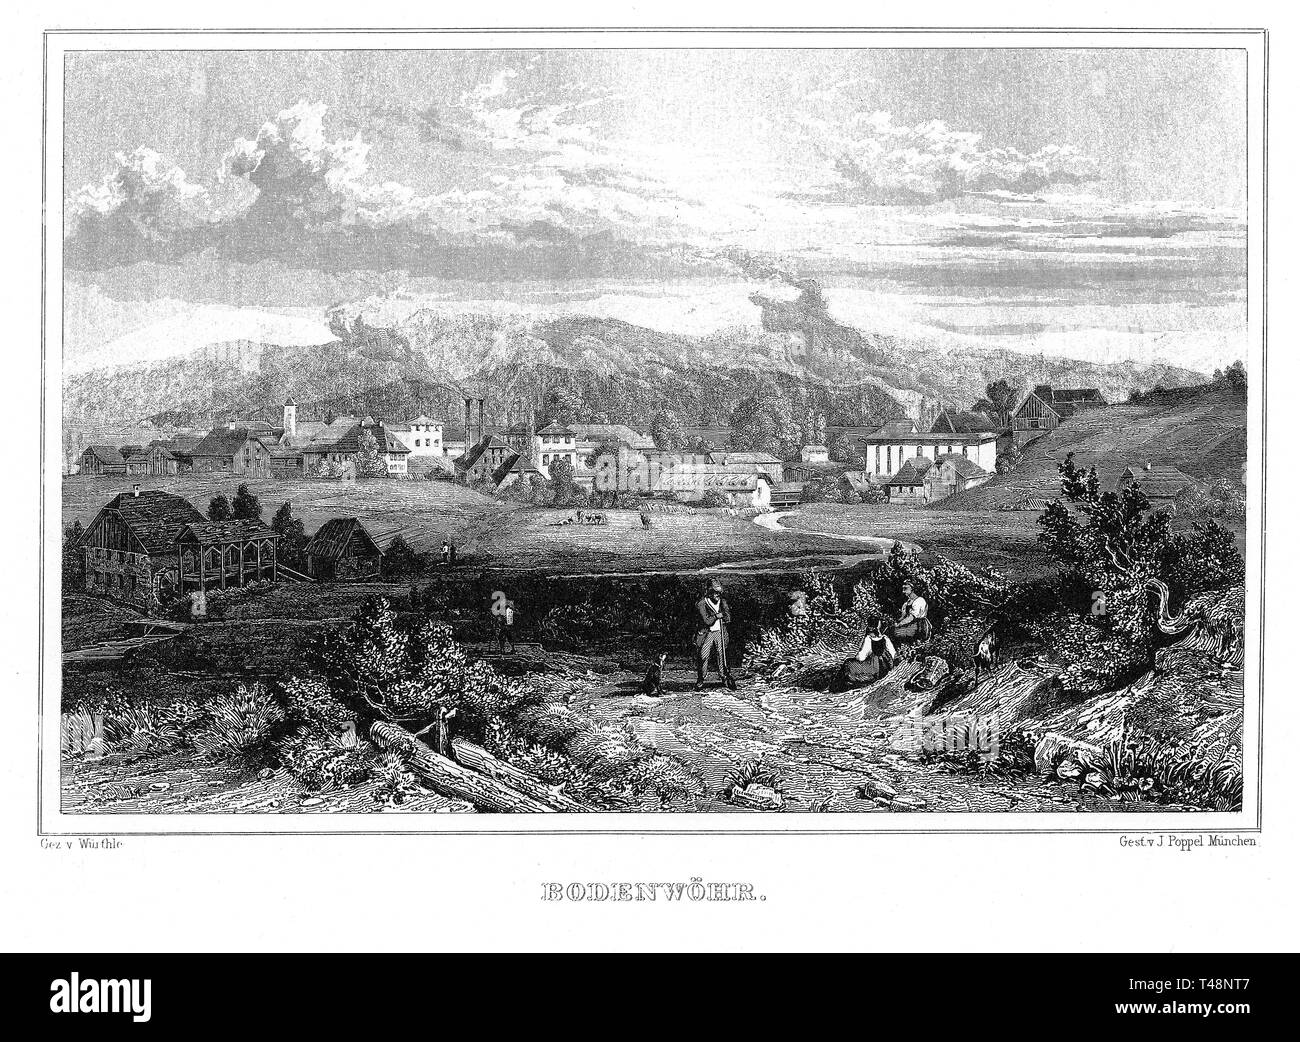 Anzeigen von bodenwöhr, Oberpfalz, Zeichnung von Wirthle, Stahlstich von J. Poppel, 1840-1854, Königreich Bayern, Deutschland Stockfoto